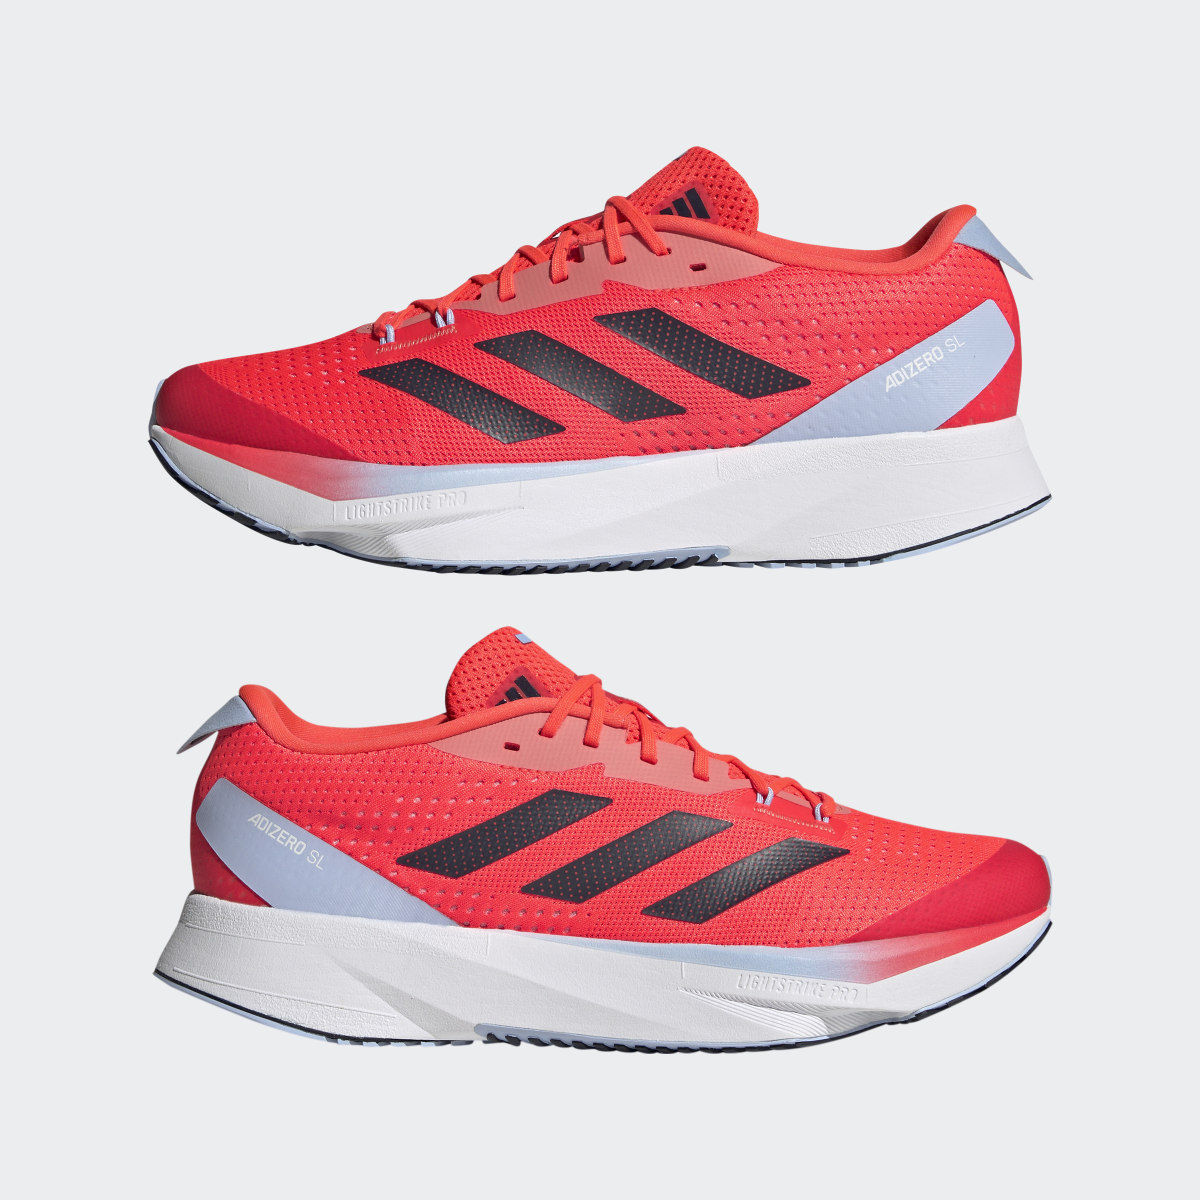 Adidas Adizero SL Running Shoes. 11